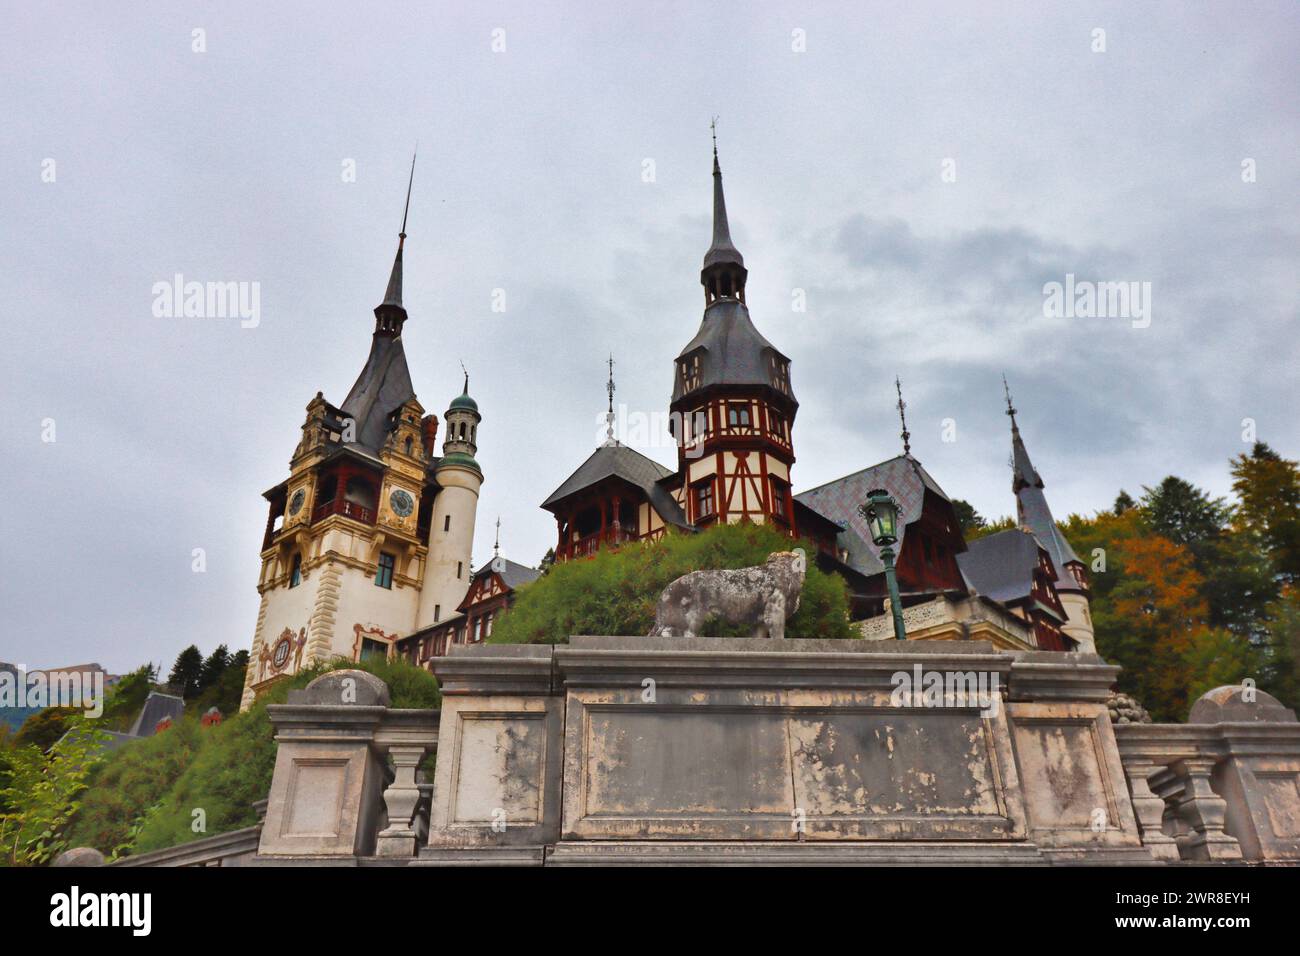 The beautiful Peles Castle, Sinaia, Romania Stock Photo